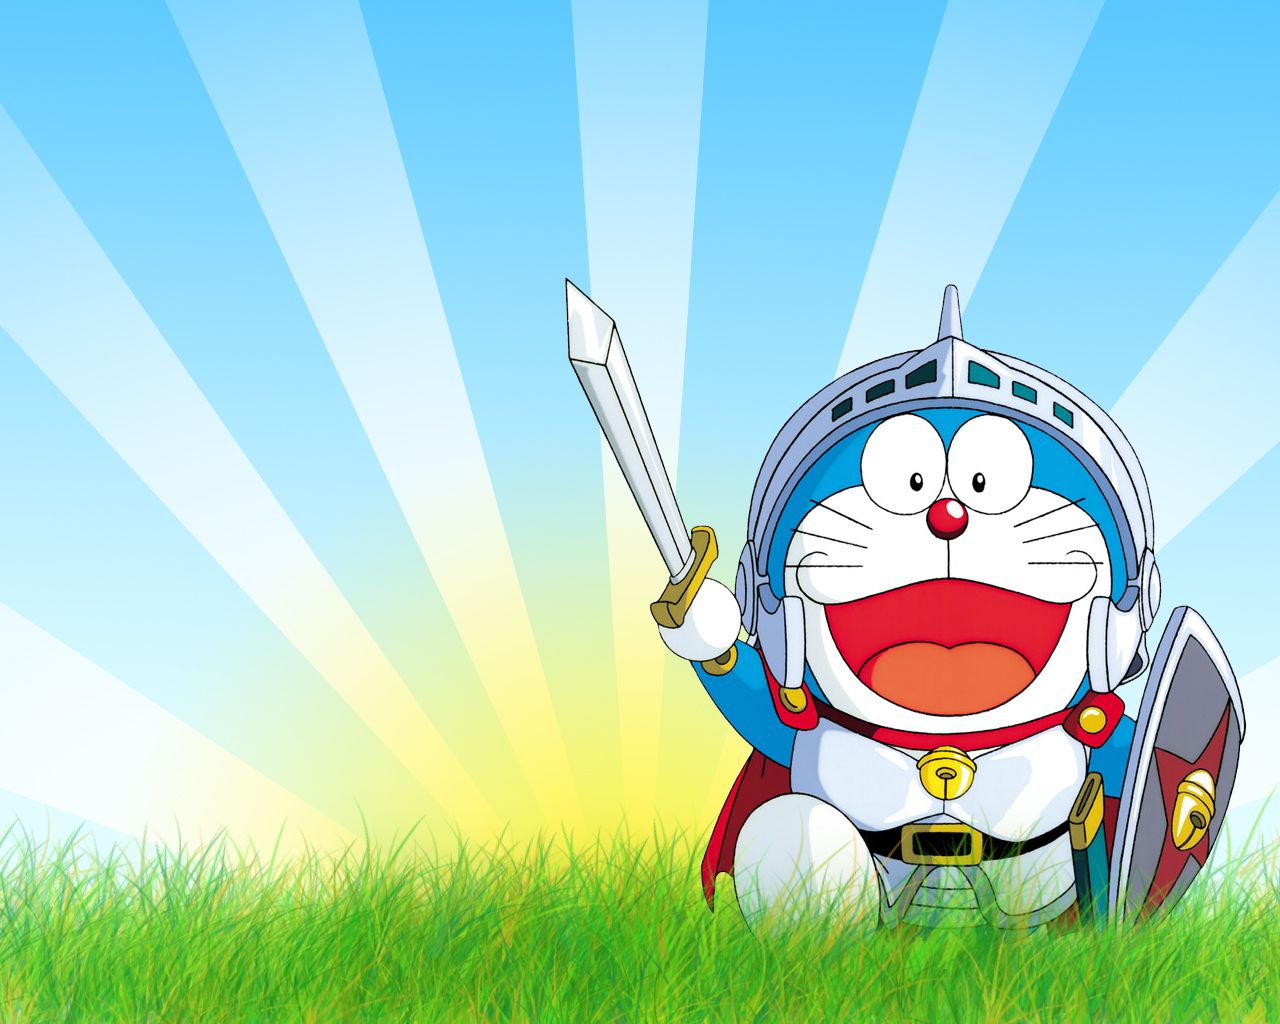 Doraemon luôn là nguồn cảm hứng để chúng ta trở về tuổi thơ và lấy lại niềm vui trong cuộc sống. Hình ảnh đáng yêu và hài hước của Doraemon và bạn bè sẽ đem đến cho bạn những kỷ niệm tuyệt vời. Hãy khám phá thêm nhiều hình ảnh đáng yêu khác của Doraemon và Suneo, Gian, Shizuka không kém.